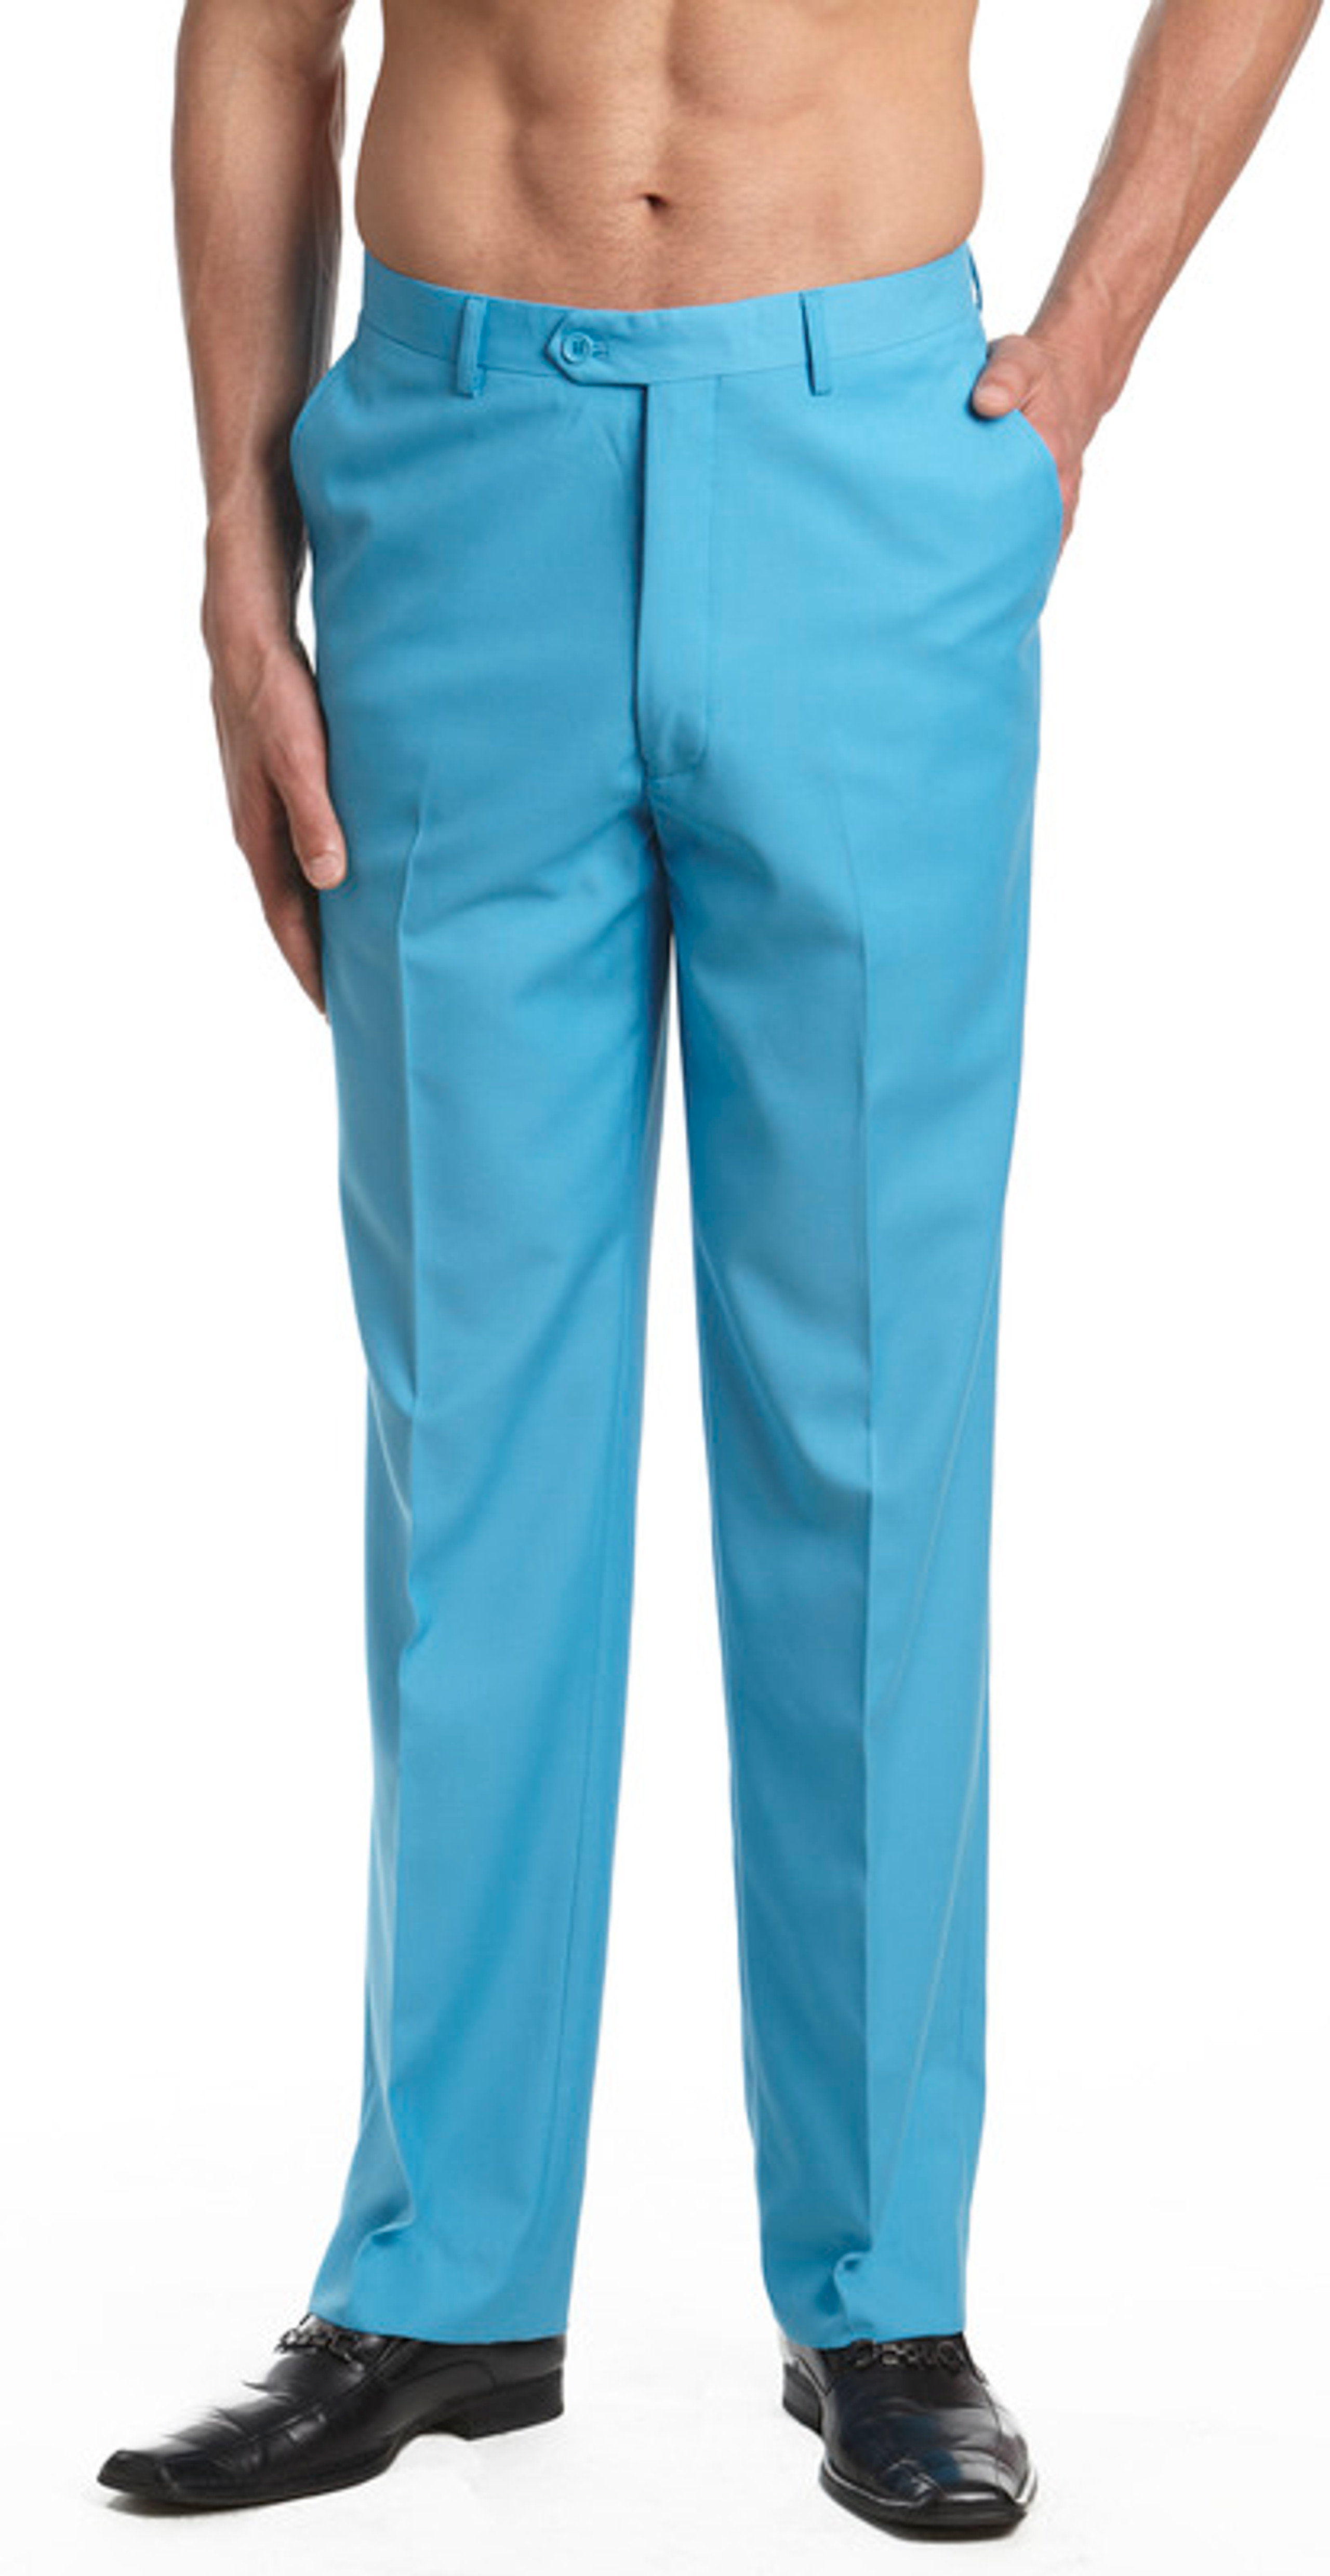 Men's Turquoise Blue Pants | Aqua Blue Concitor Pant